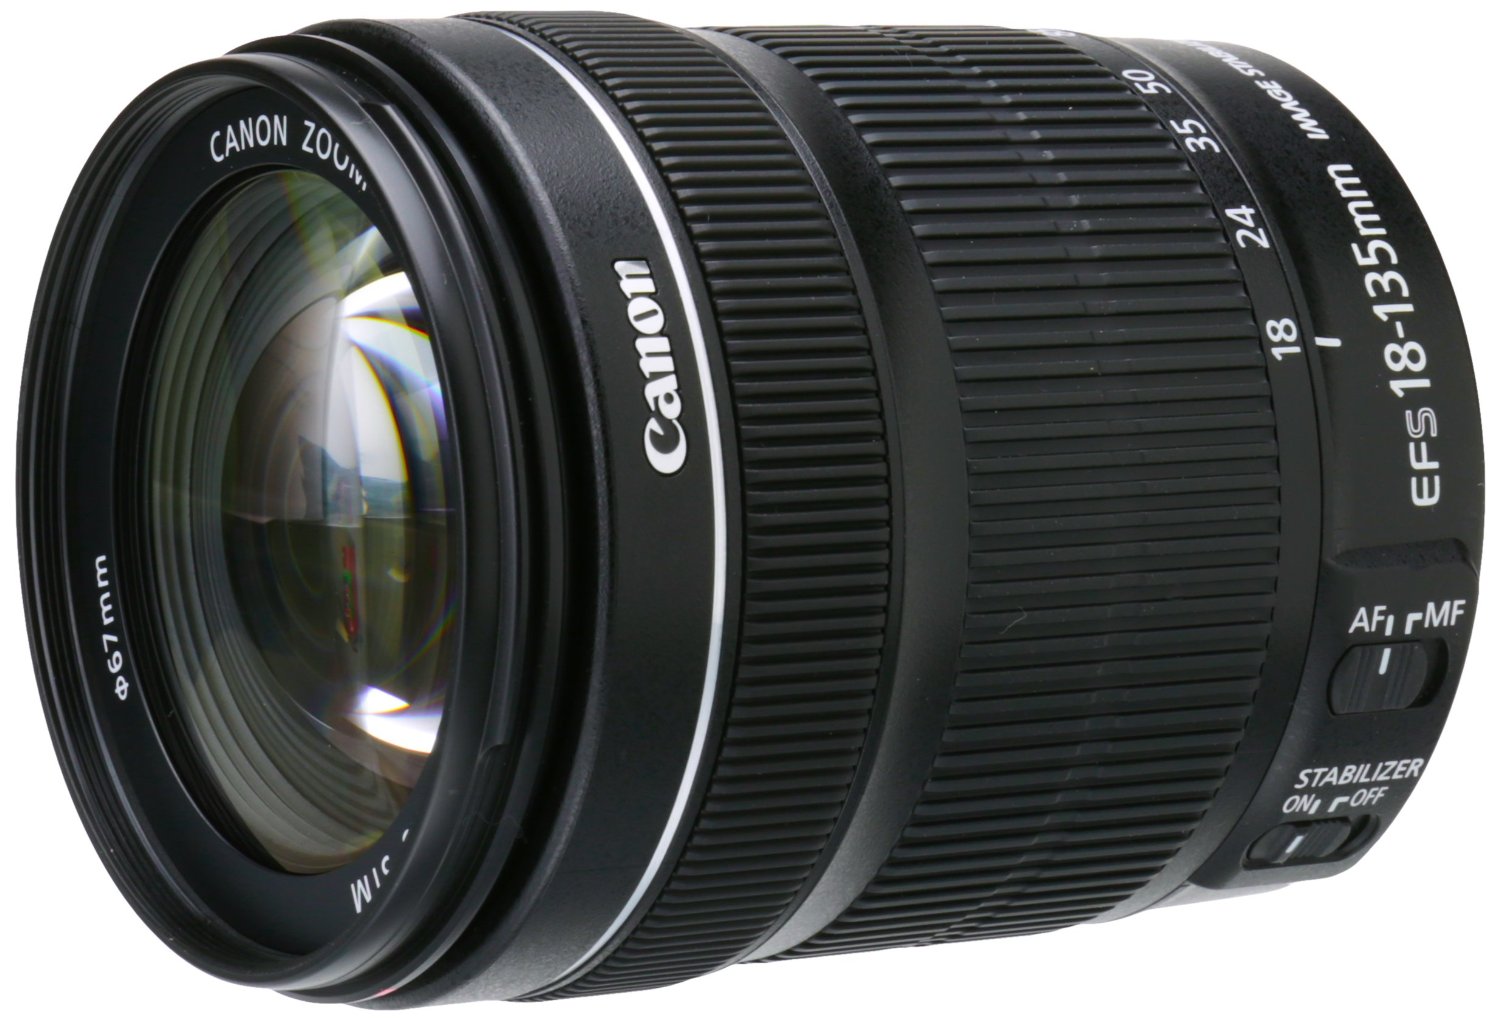 Canon Lens | Lens Rumors - Part 16